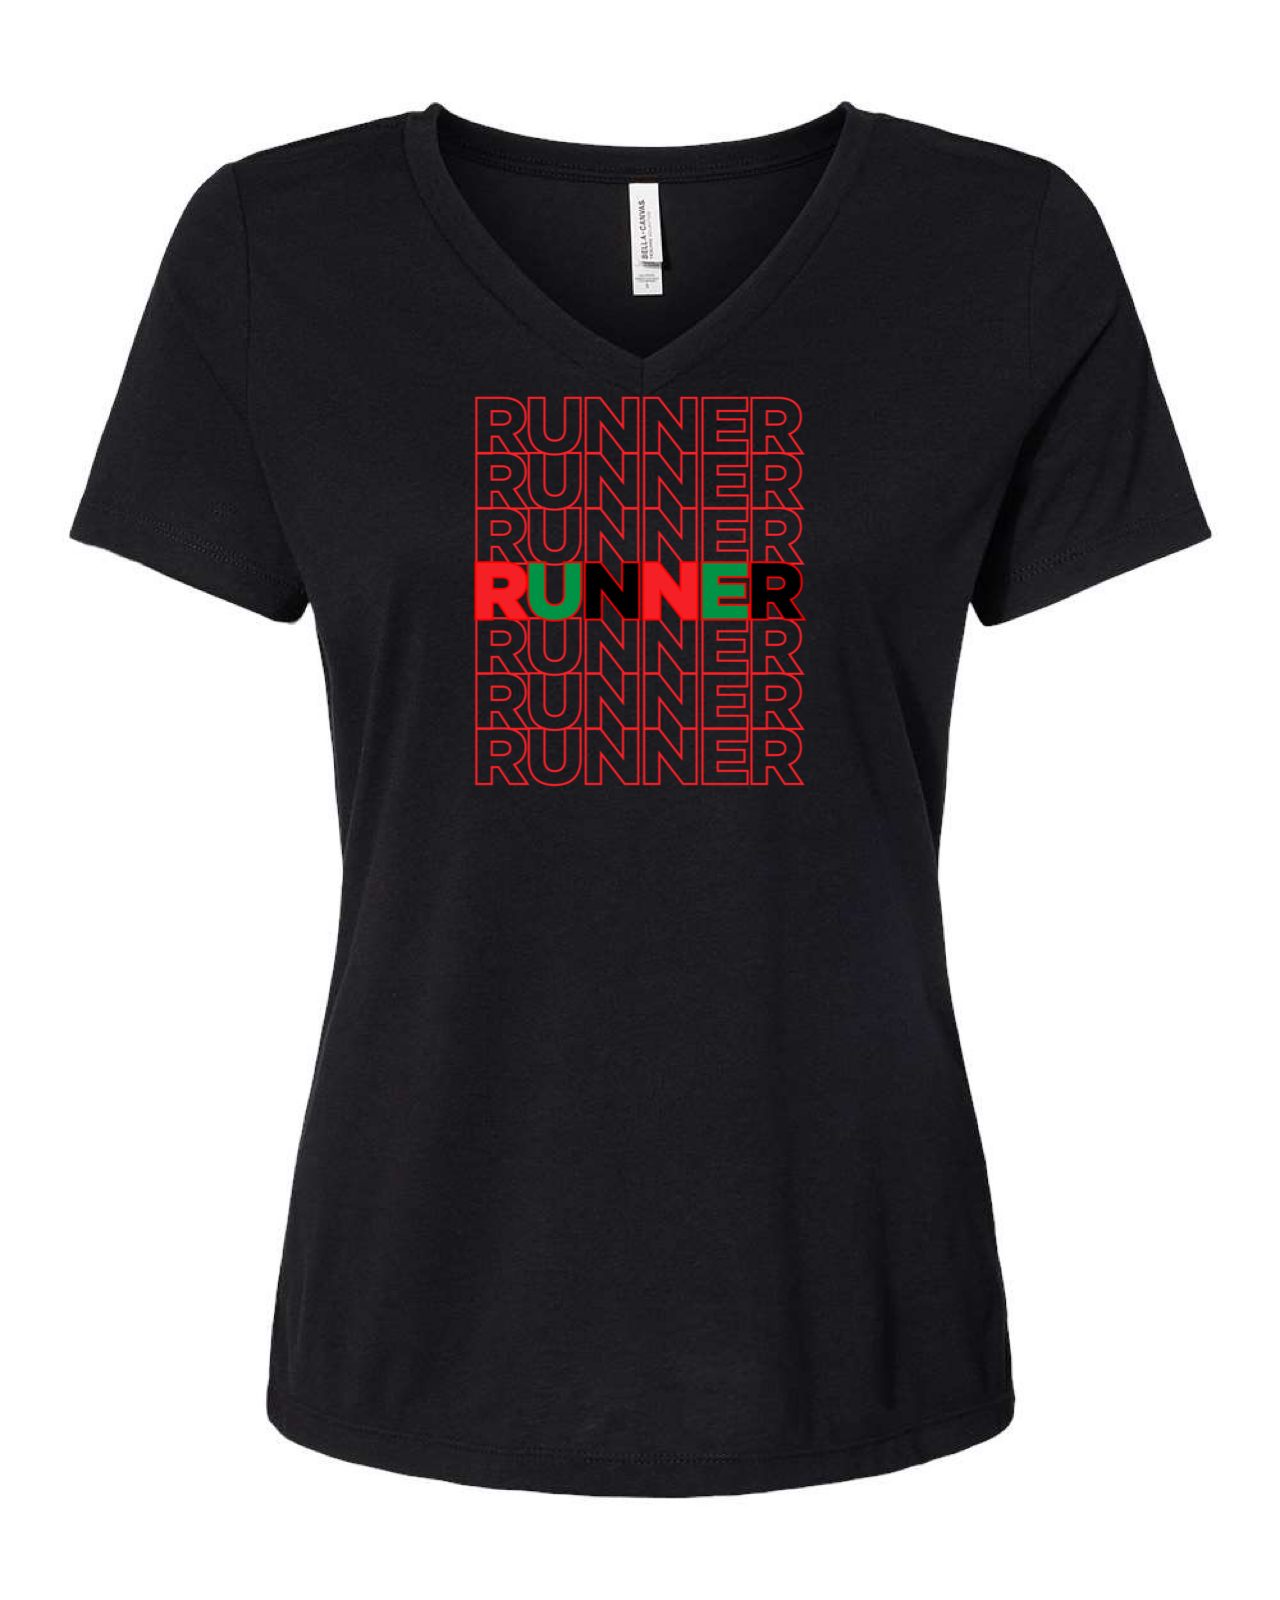 Runner Runner Runner Tri- Blend V-Neck T-Shirt